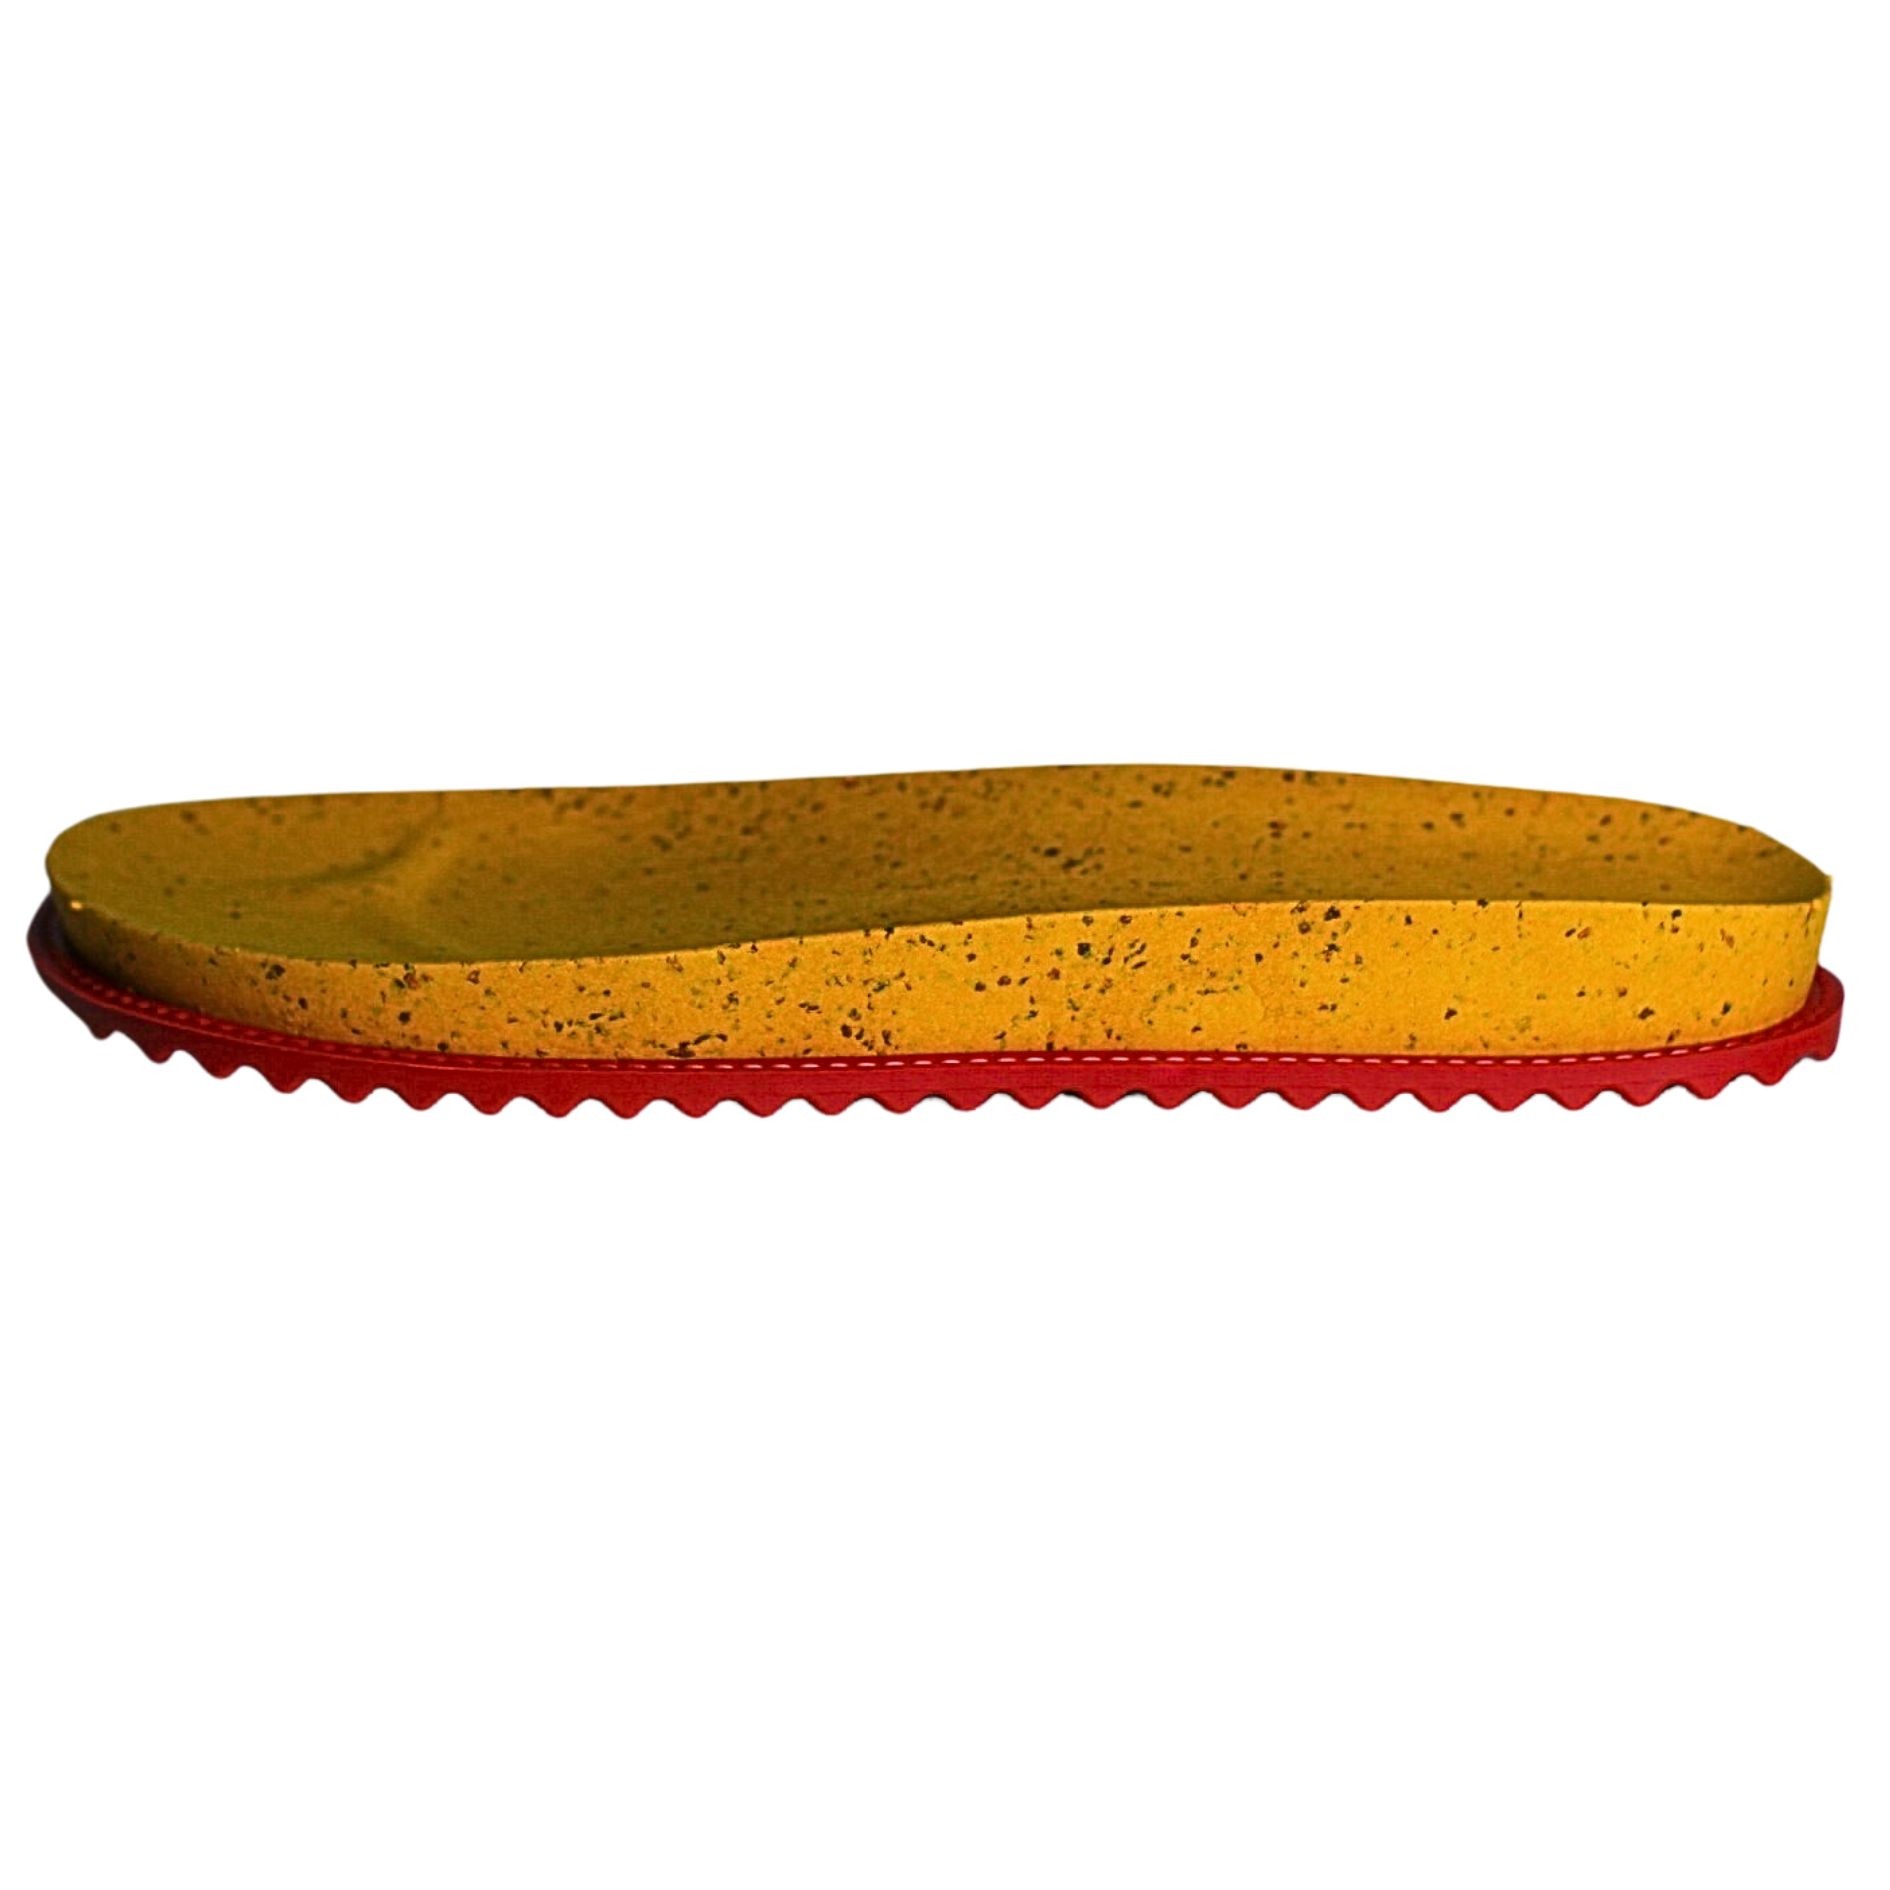 Solado Papete Mostarda com Cortiça e Soleta Vermelha - Ref. 1004